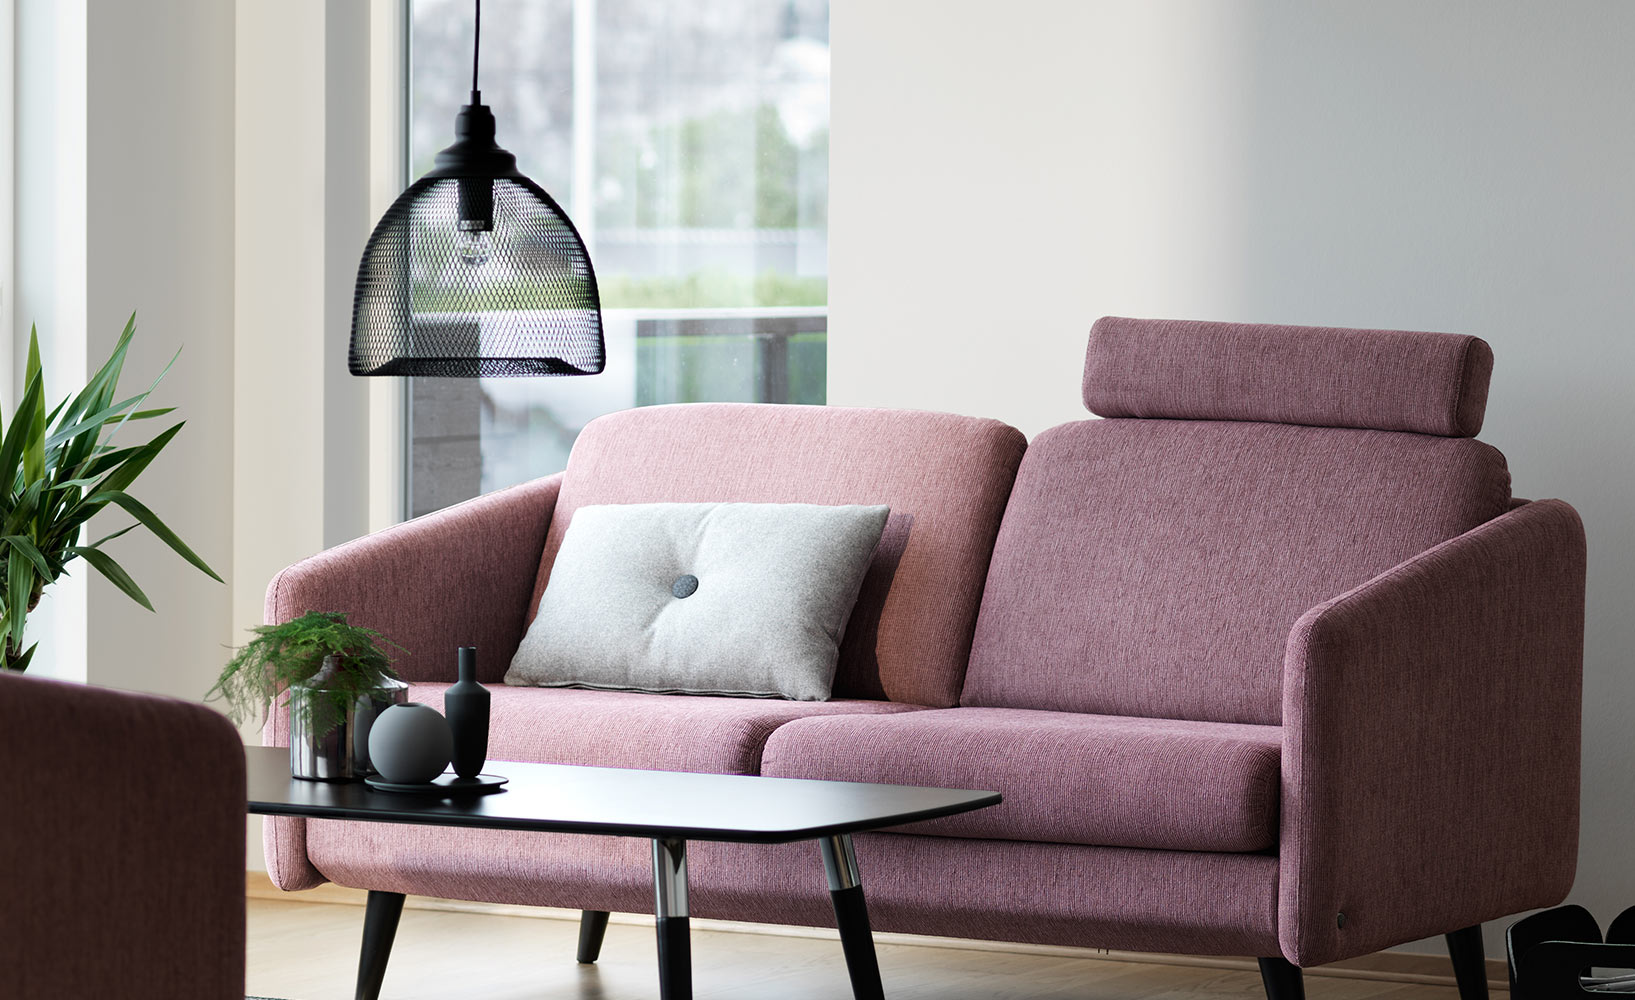 Das Ideale Sofa Fur Kleine Wohnzimmer Finden So Geht S